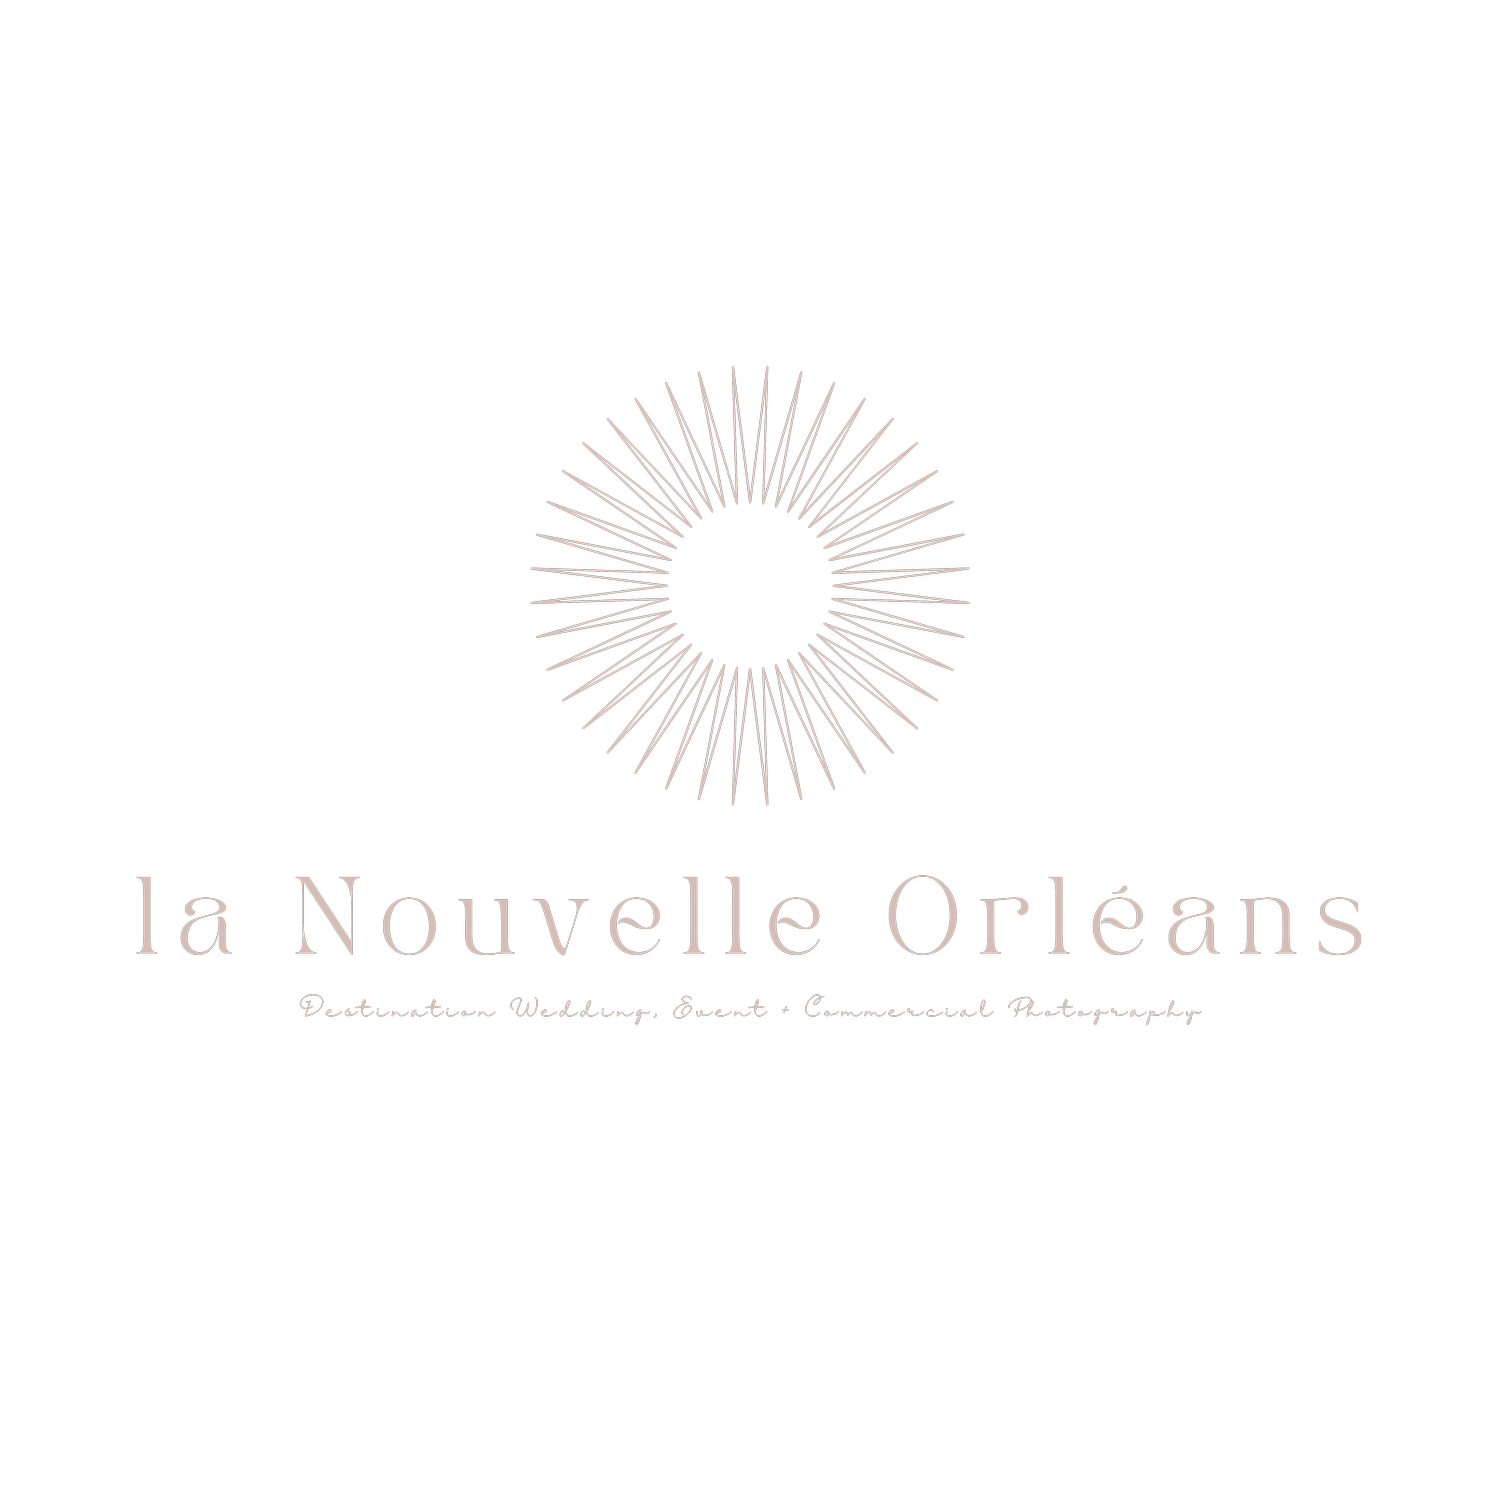 La Nouvelle Orléans Photography